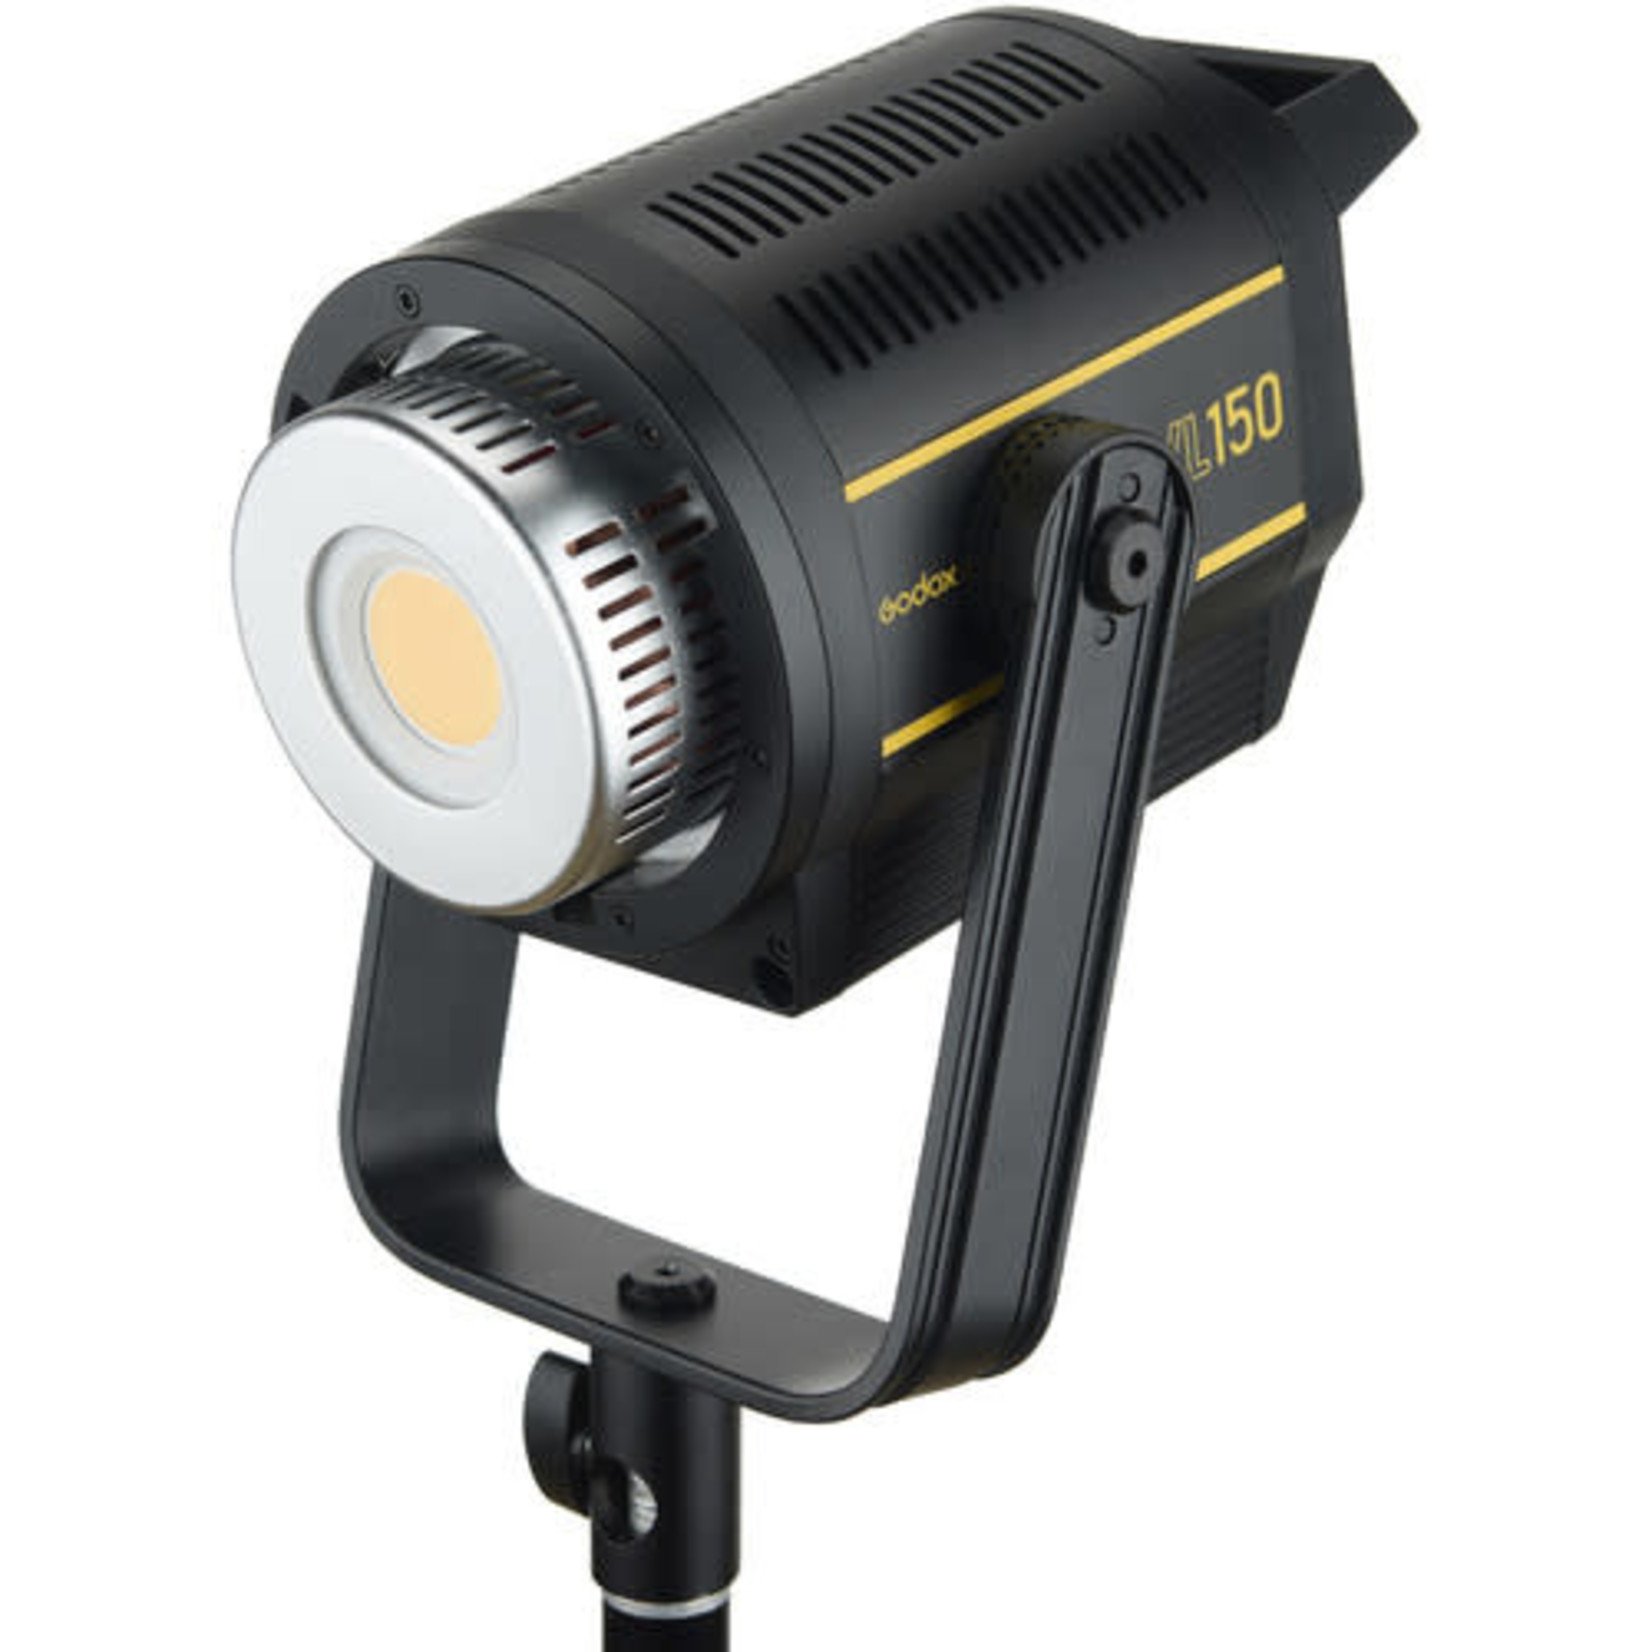 Godox Godox VL150 Video LED Light